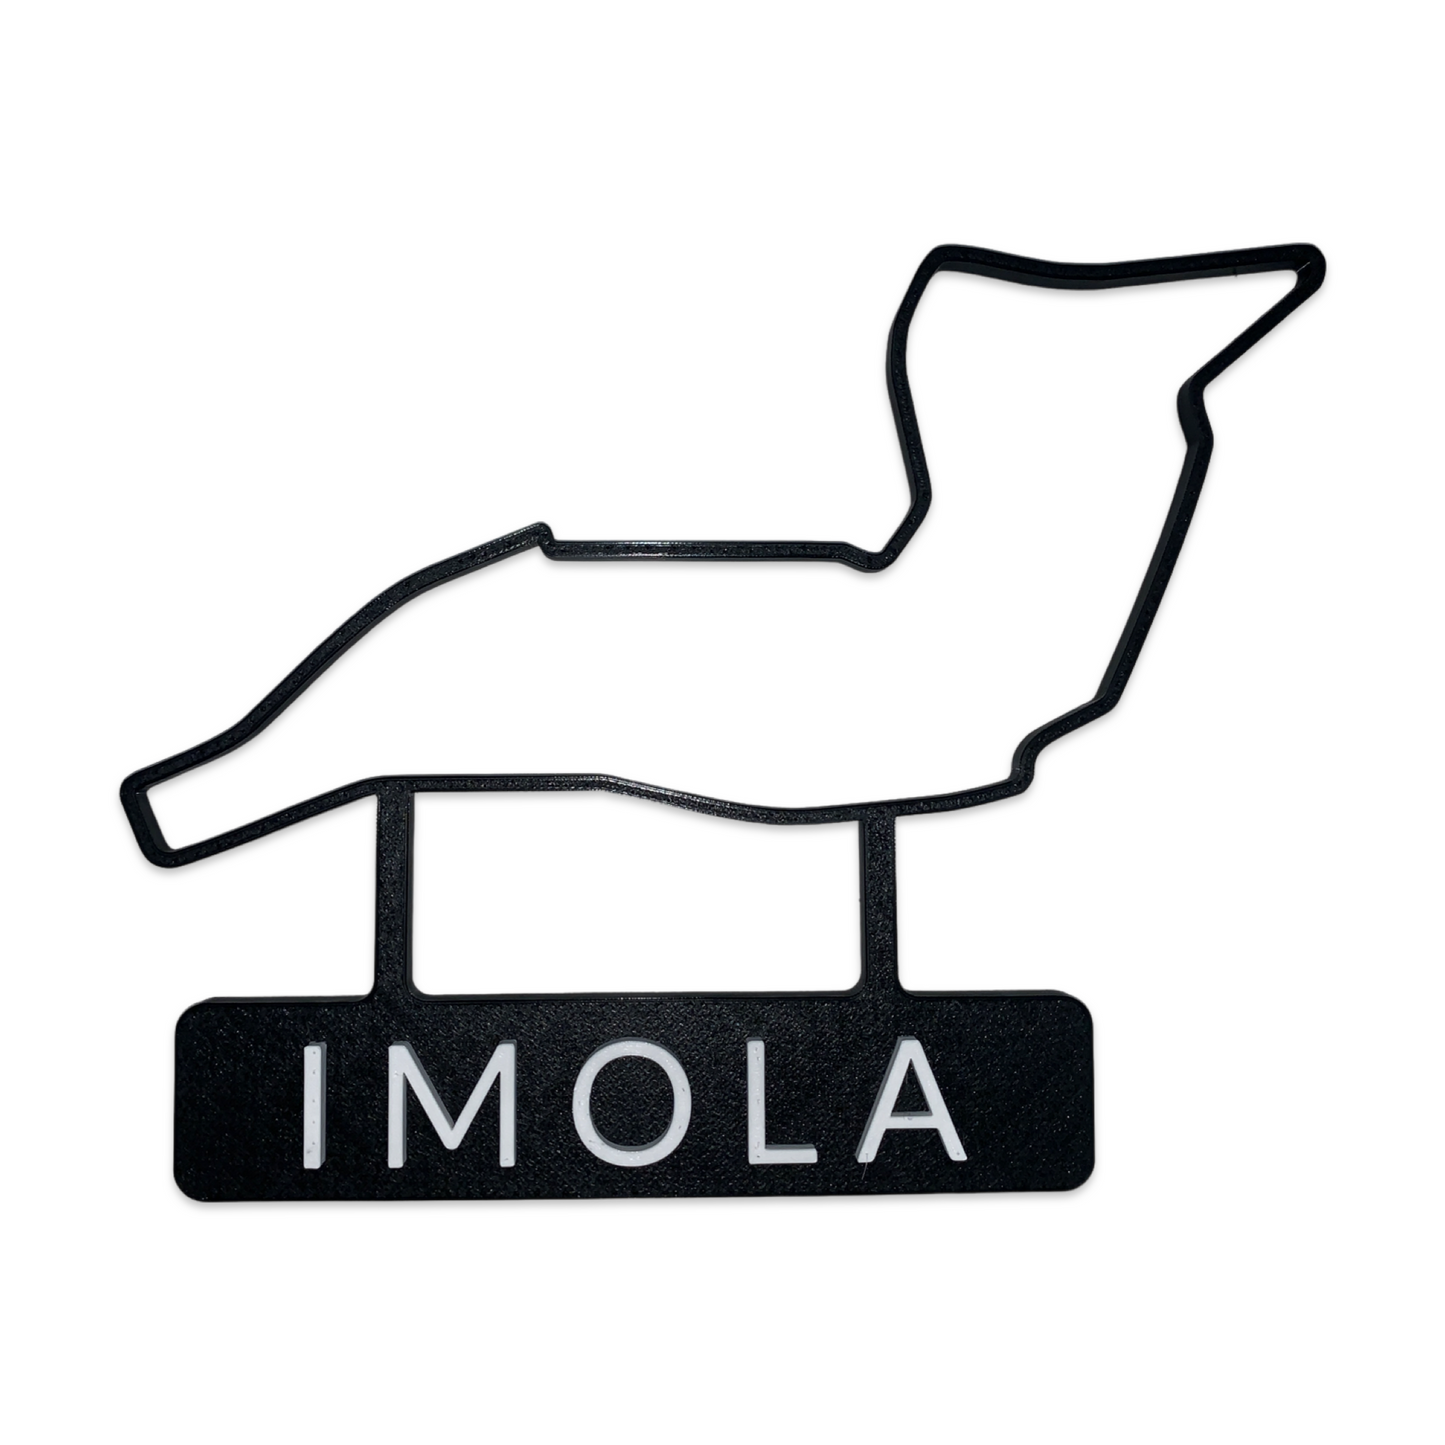 3D-gedruckte F1-Strecken Saison 2021 - Imola